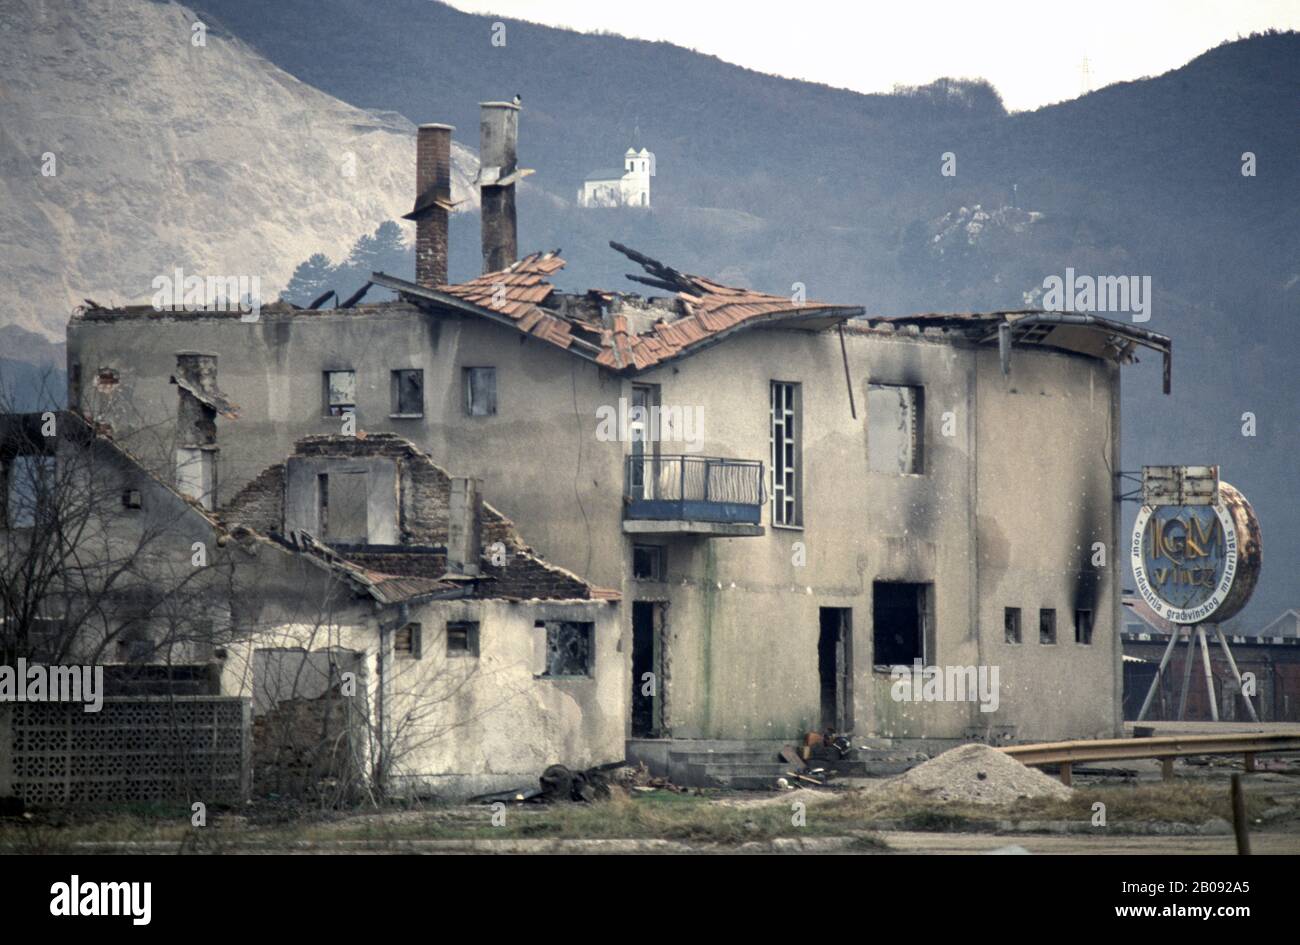 Januar 1994 Ethnische Säuberungen während des Krieges in Zentralbosnien: Verbrannte Häuser und Gebäude in Grbavica, am Stadtrand von Vitez, vier Monate zuvor von HVO-Truppen (bosnisch-kroat) angegriffen. Stockfoto